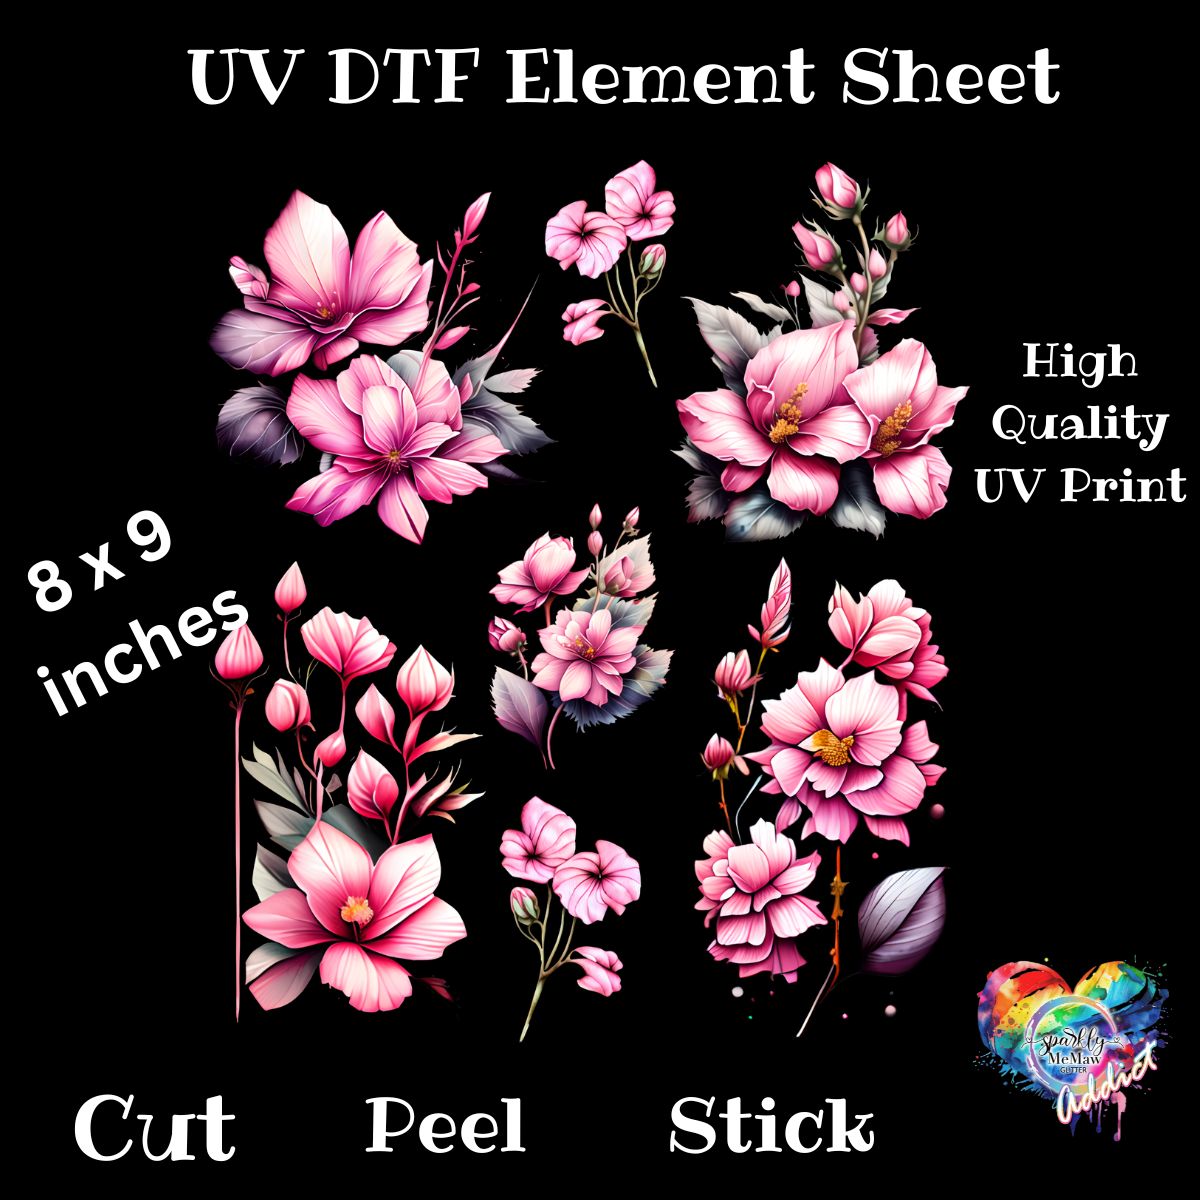 Pink Flowers UV DTF element Sheet